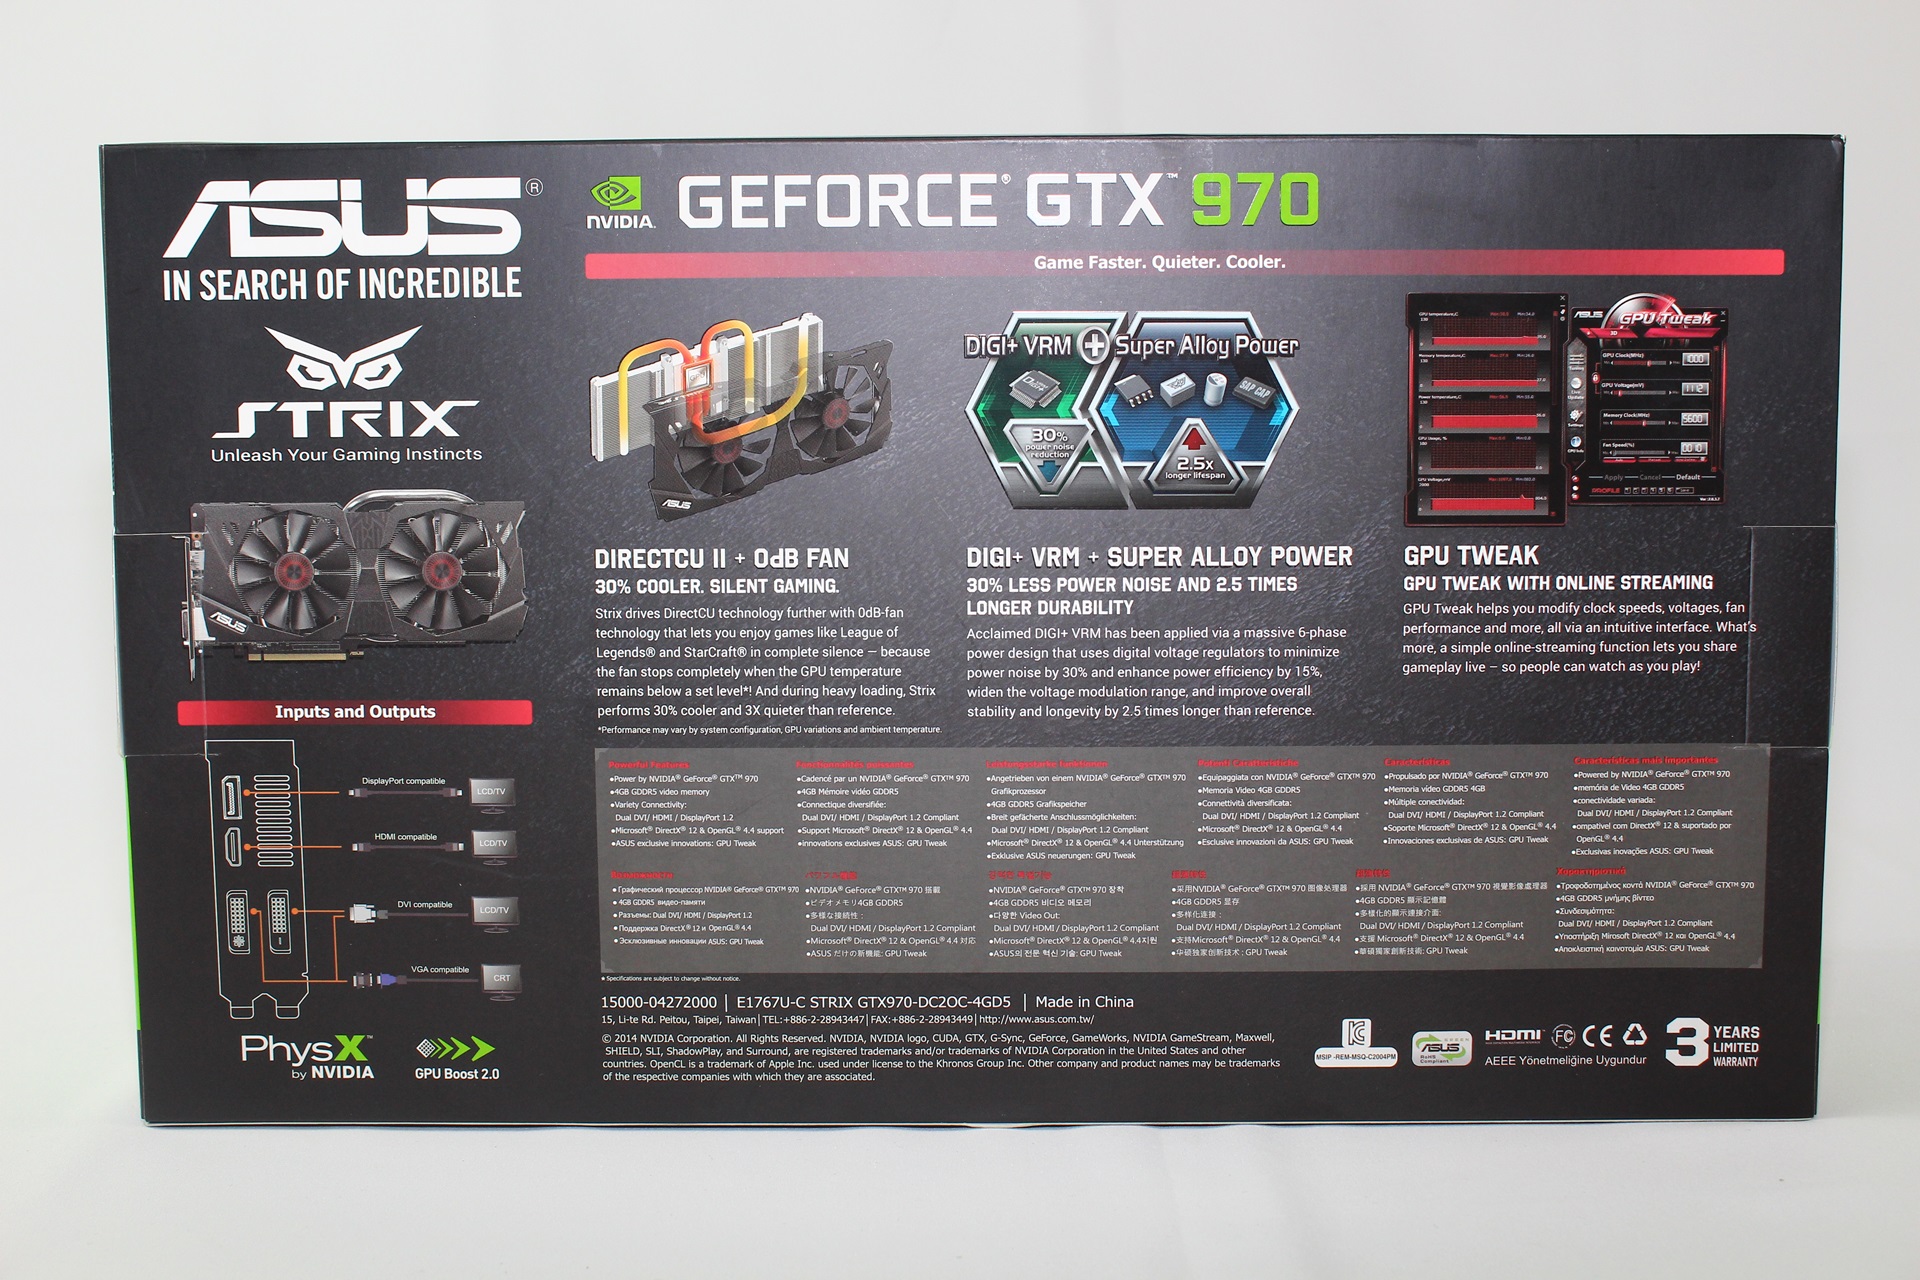 XF] 寂靜高效能，超頻再超頻– ASUS Strix GTX 970 OC 4GB顯示卡 